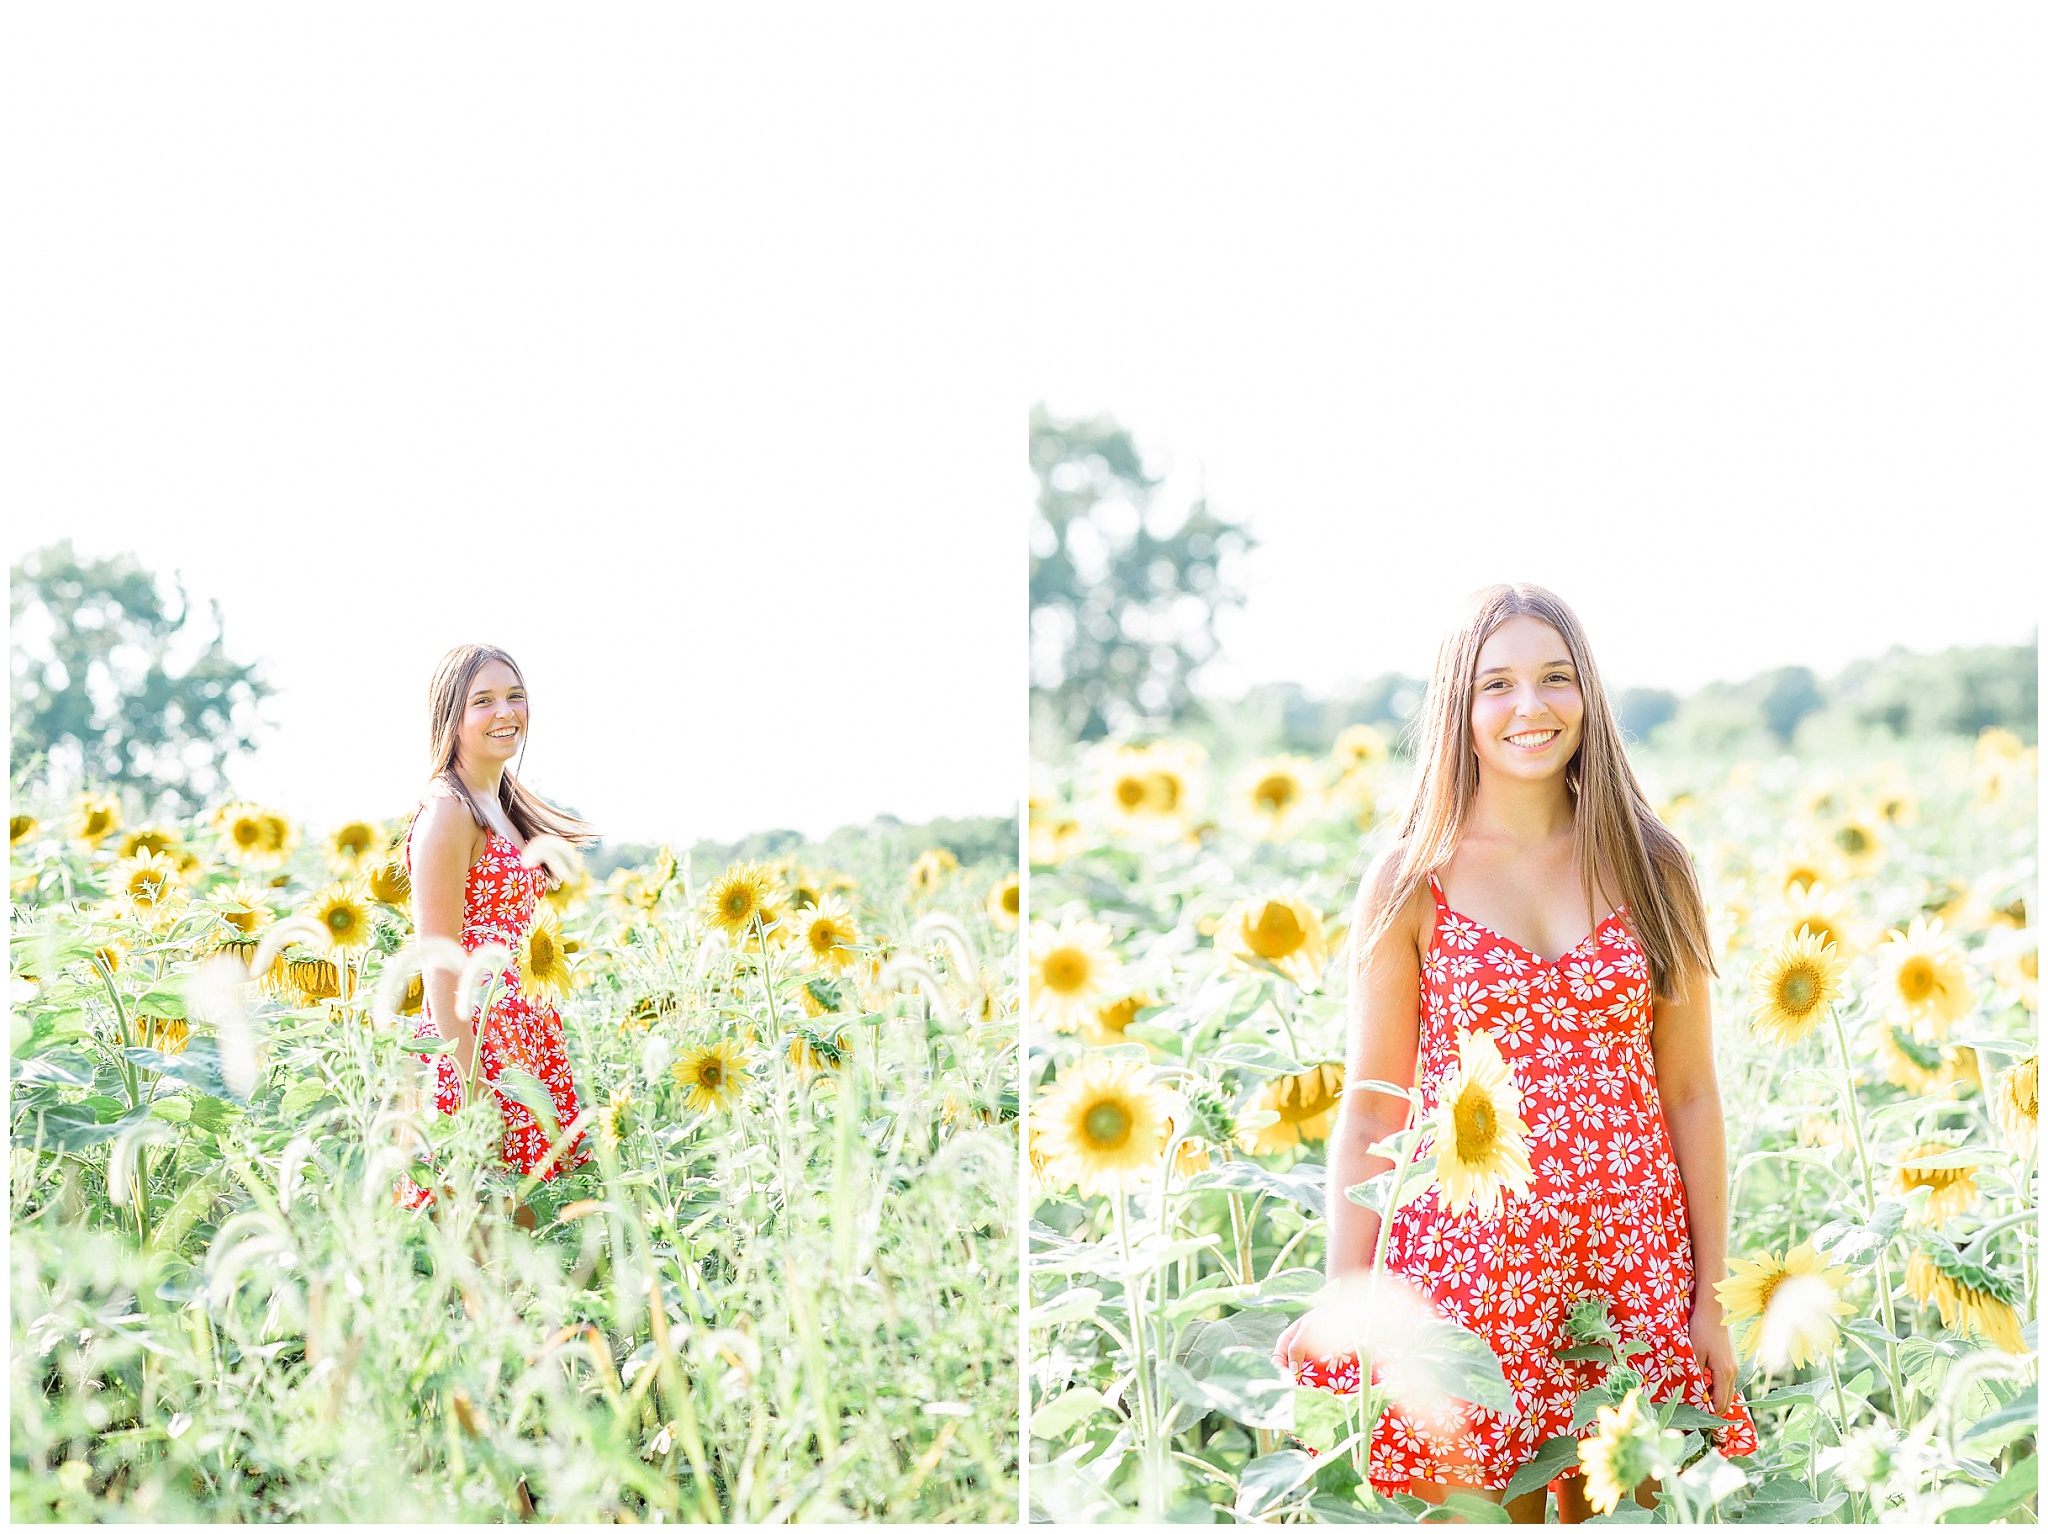 senior girl in sunflower field